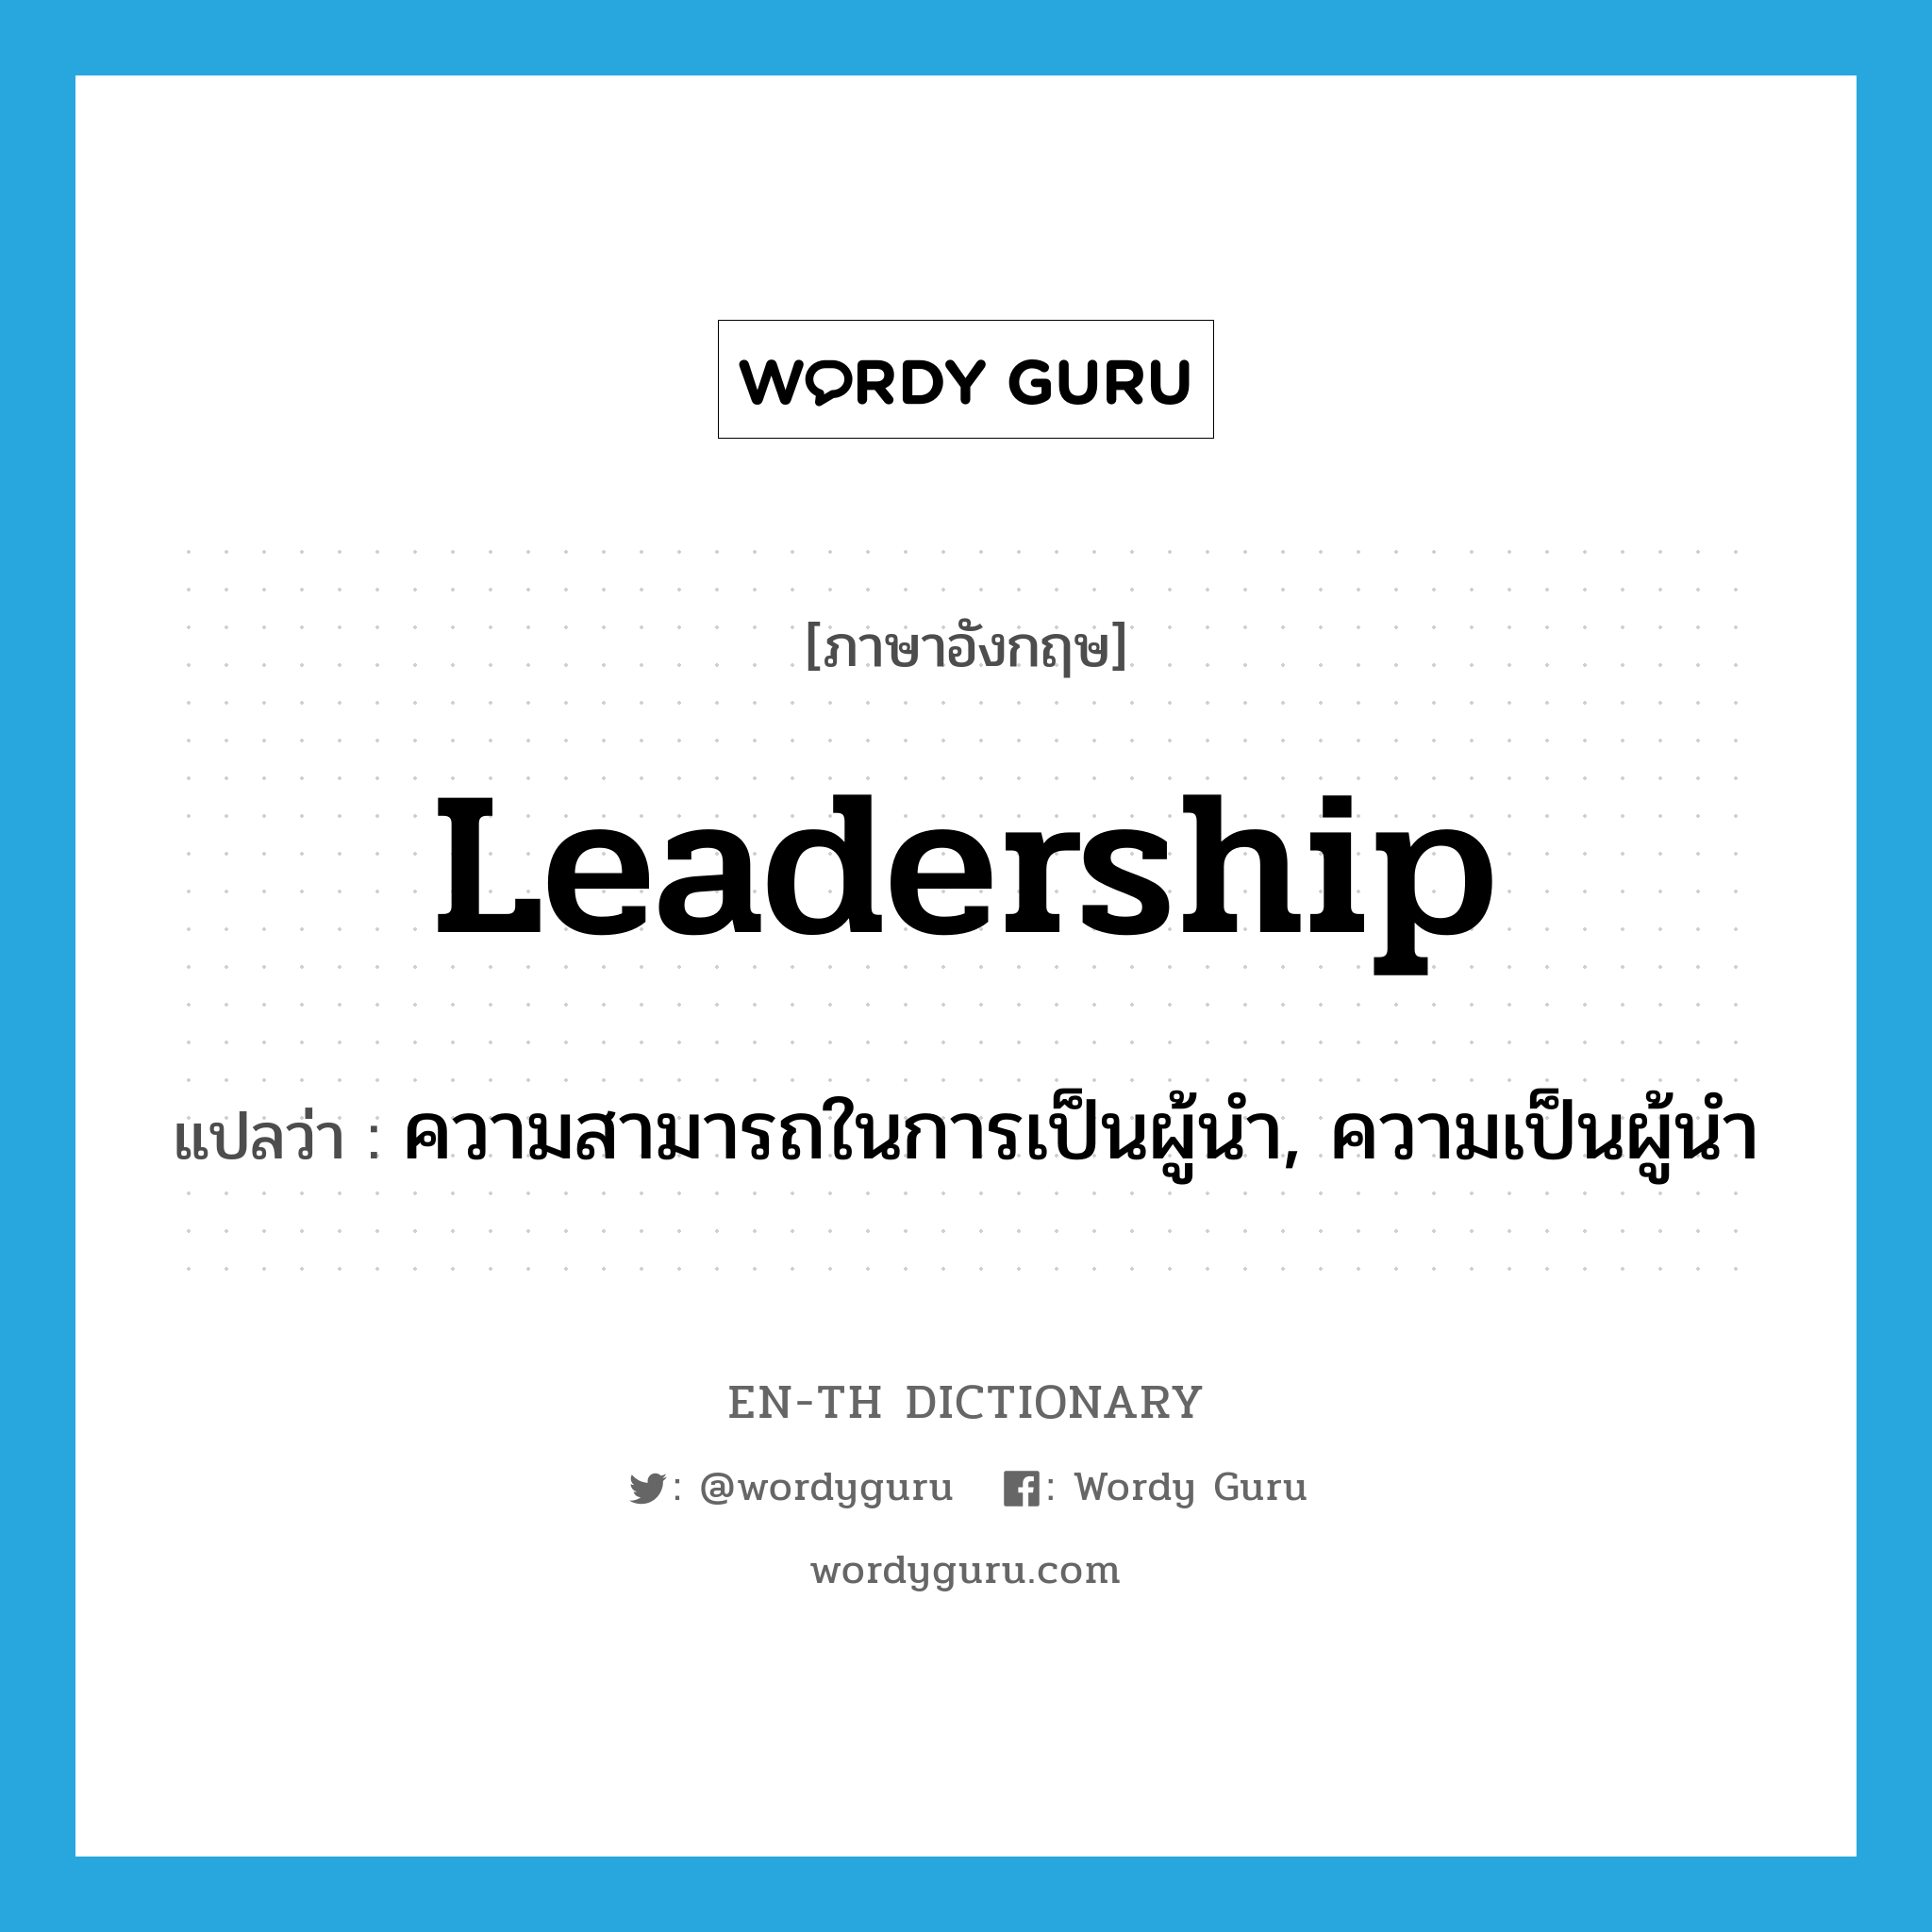 ความสามารถในการเป็นผู้นำ, ความเป็นผู้นำ ภาษาอังกฤษ?, คำศัพท์ภาษาอังกฤษ ความสามารถในการเป็นผู้นำ, ความเป็นผู้นำ แปลว่า leadership ประเภท N หมวด N